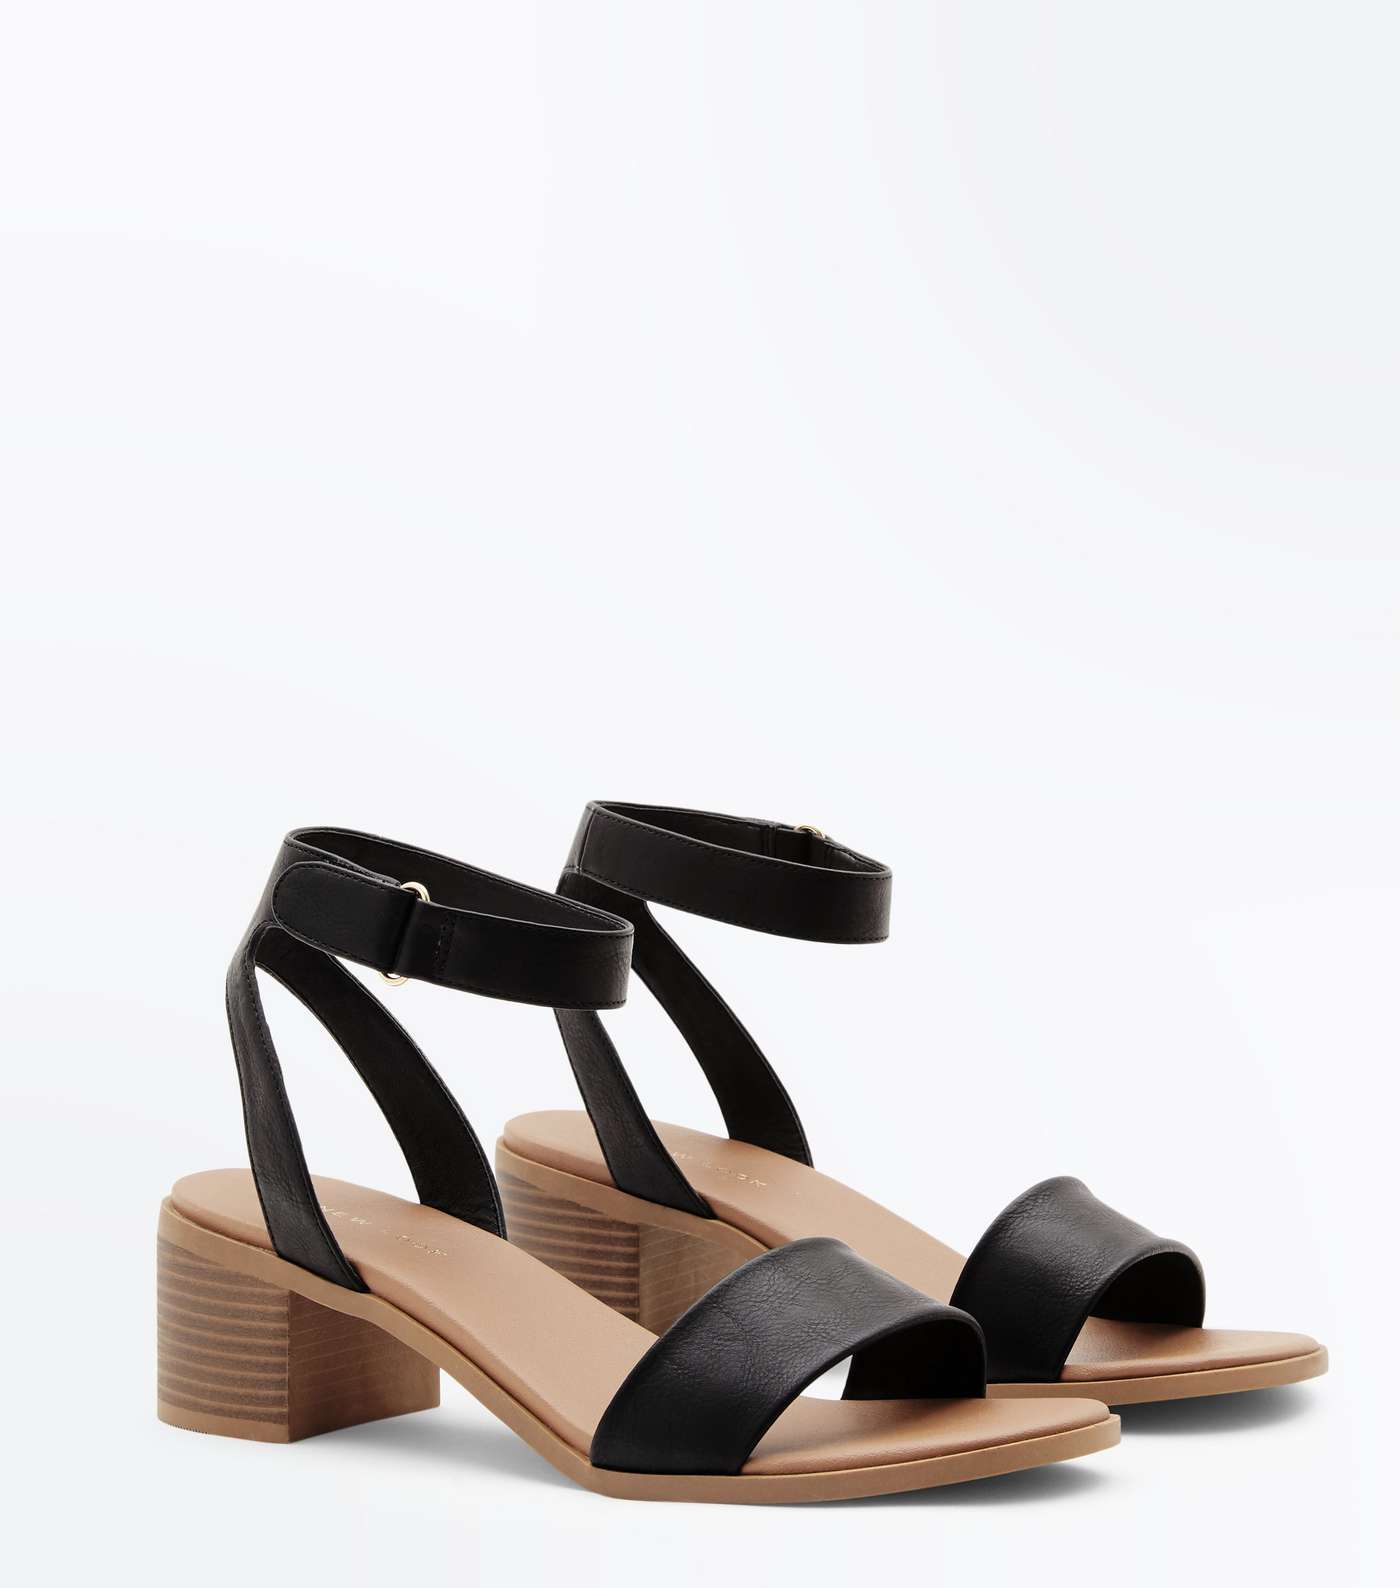 Black Low Block Heel Flexible Sole Sandals Image 3